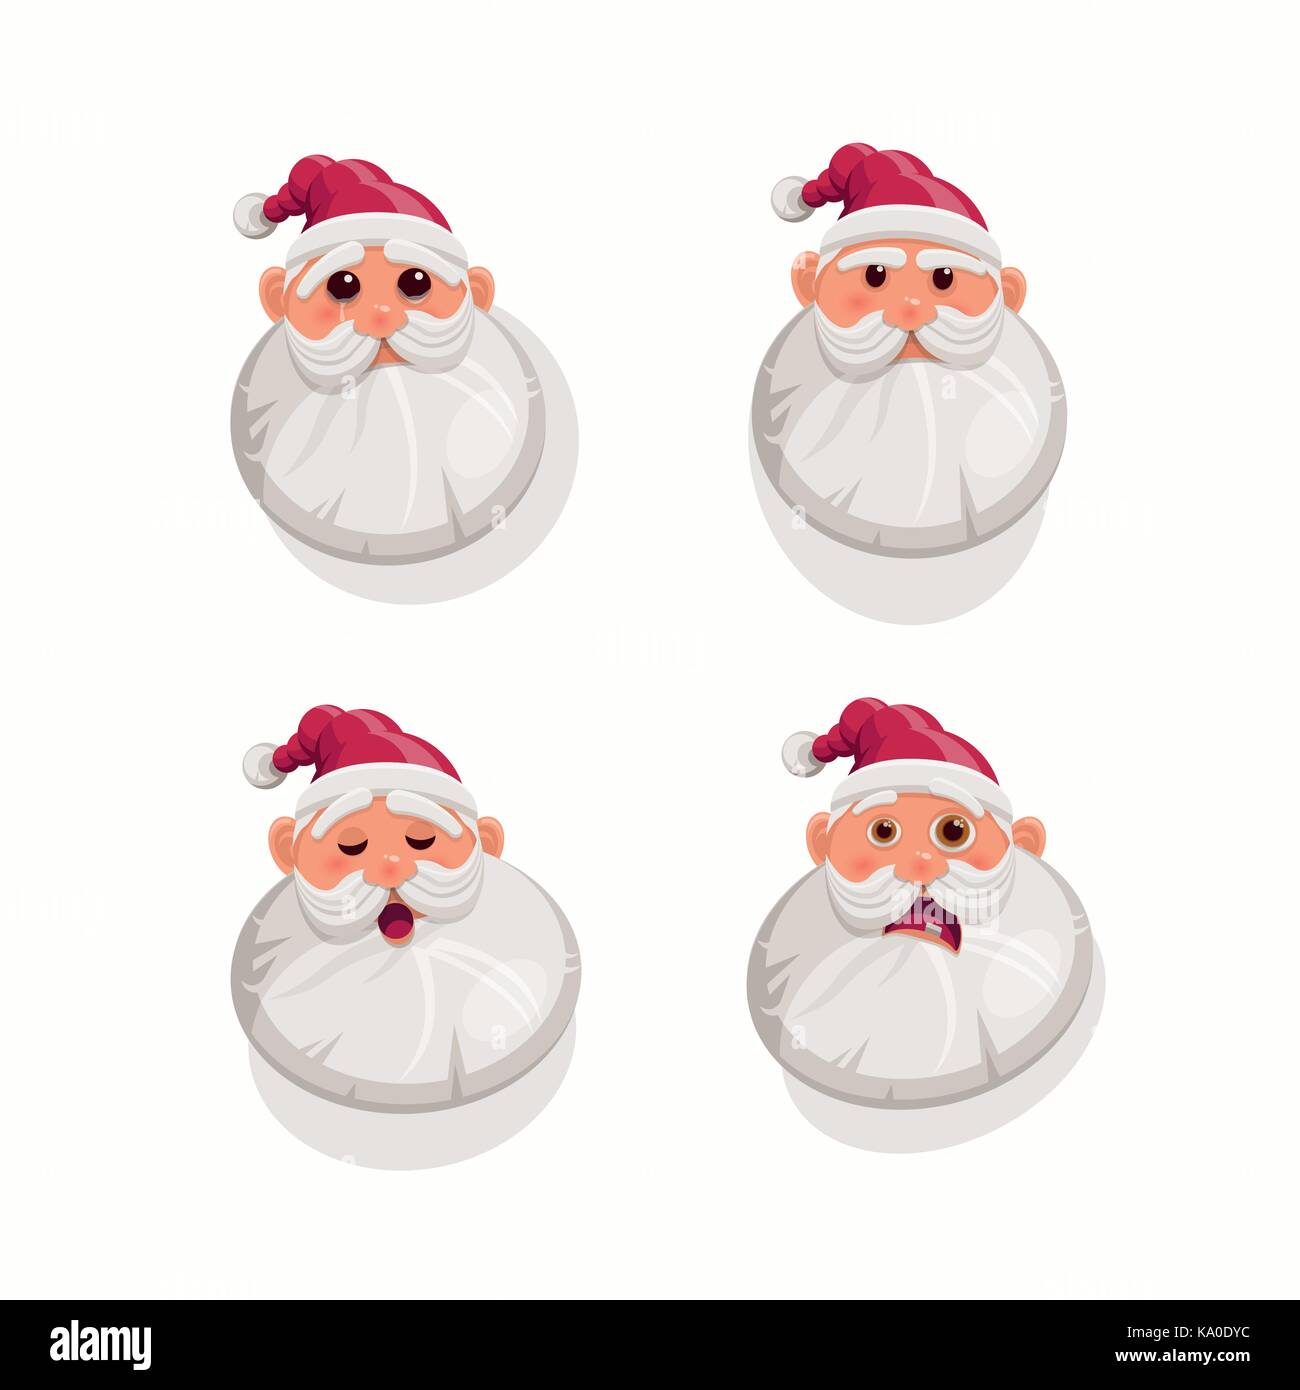 Santa Claus expresiones faciales. ilustración vectorial. Ilustración del Vector